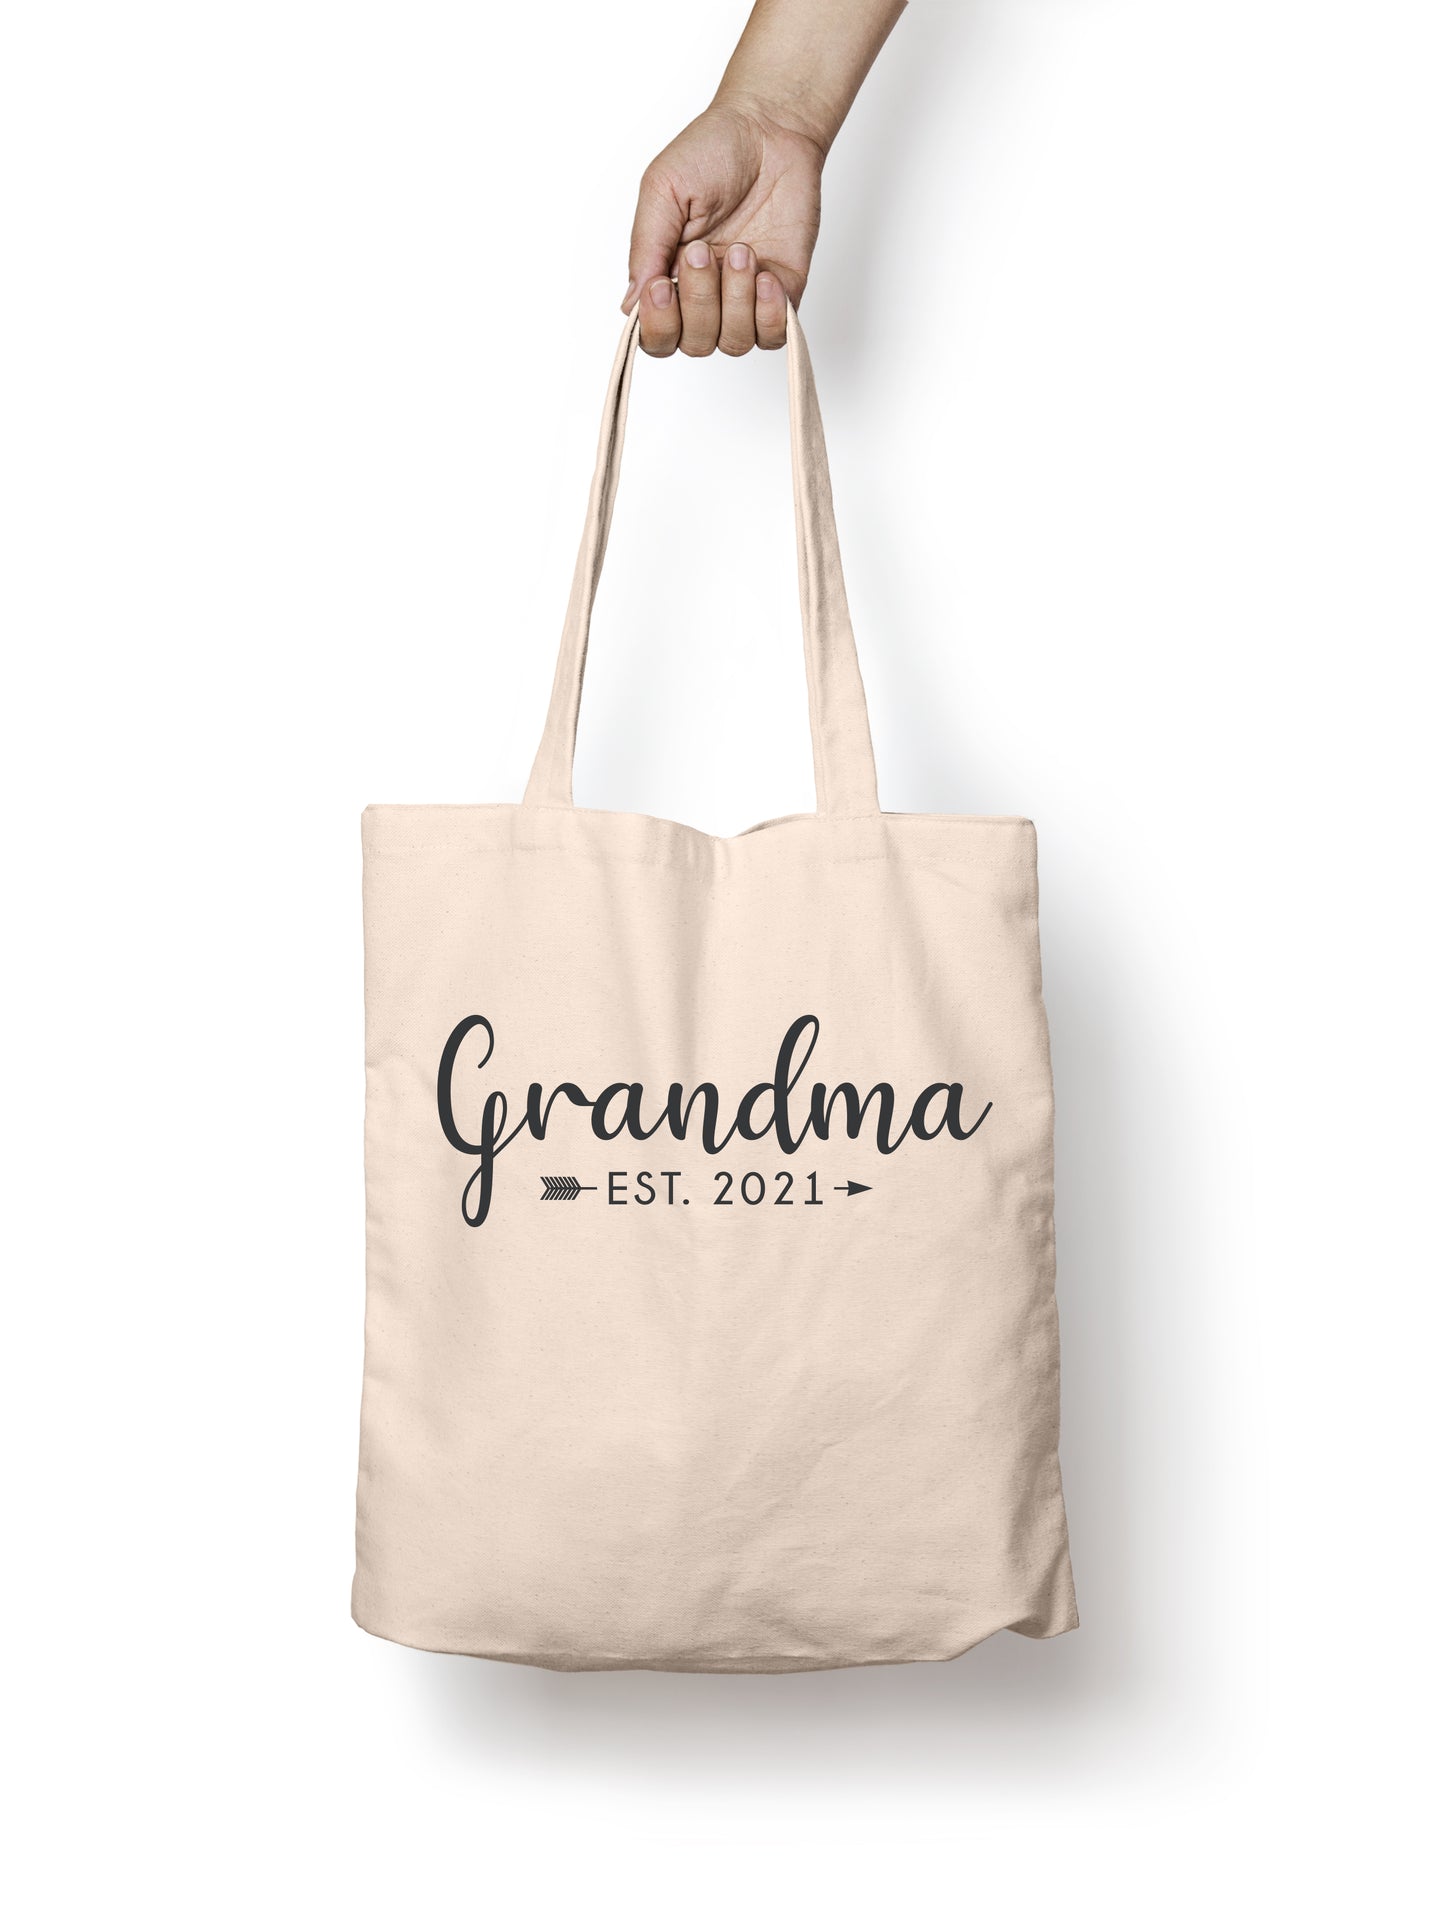 Grandma 2021 Tote Bag, Grocery Tote, Book Tote, Office Tote, 100% Cotton Fun Tote